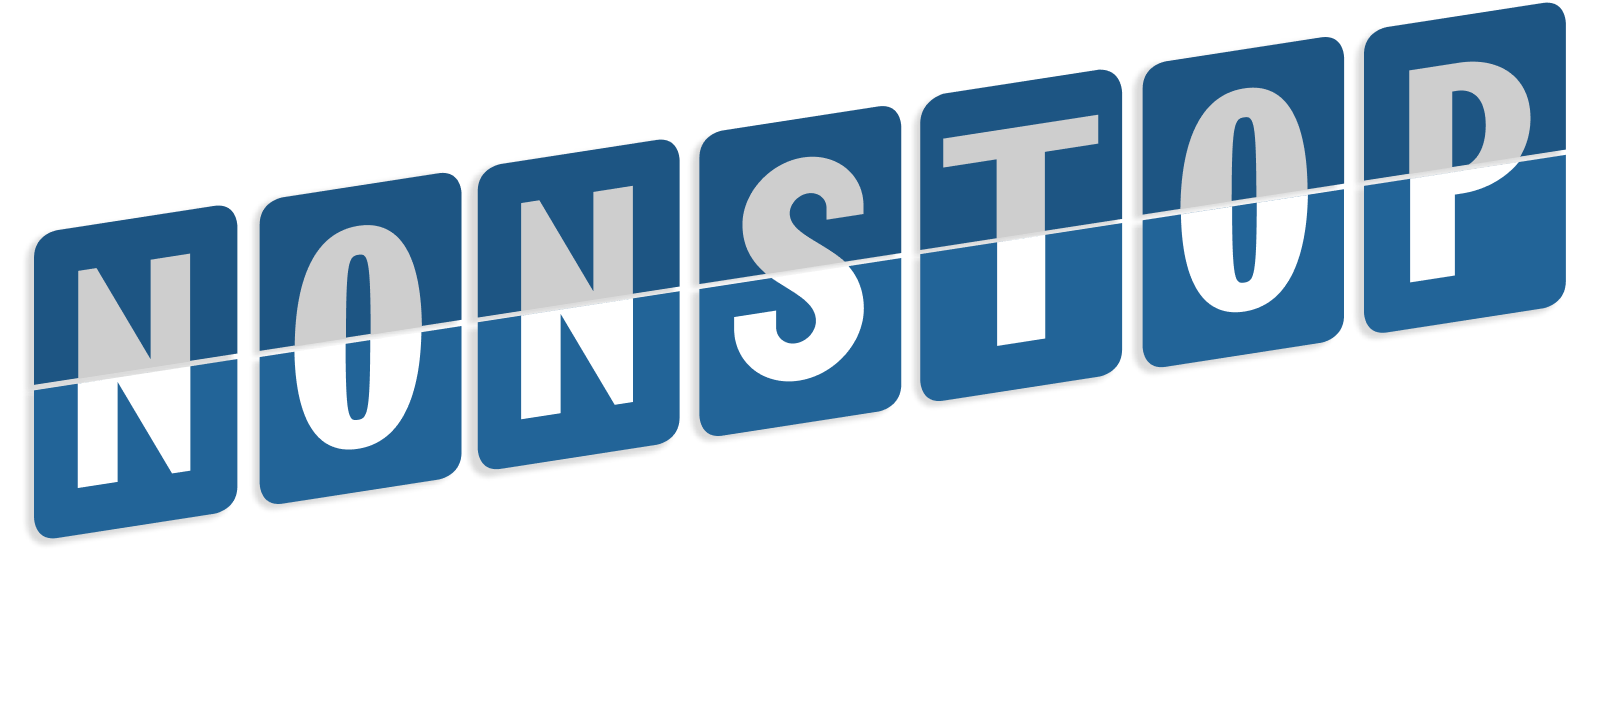 NONSTOP for easy travel logo